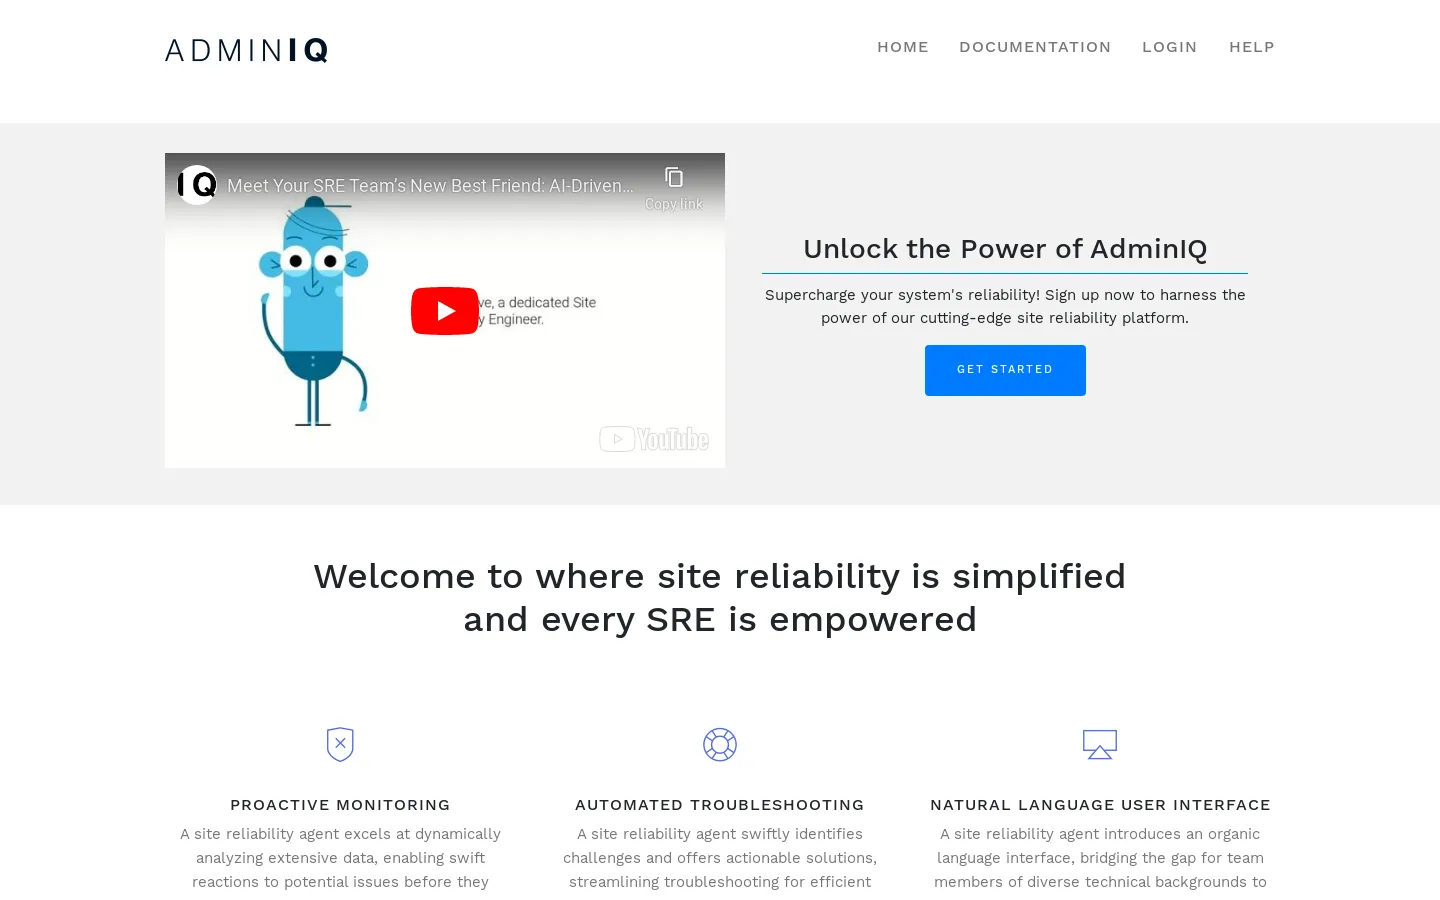 AdminIQ - Simplify Site Reliability